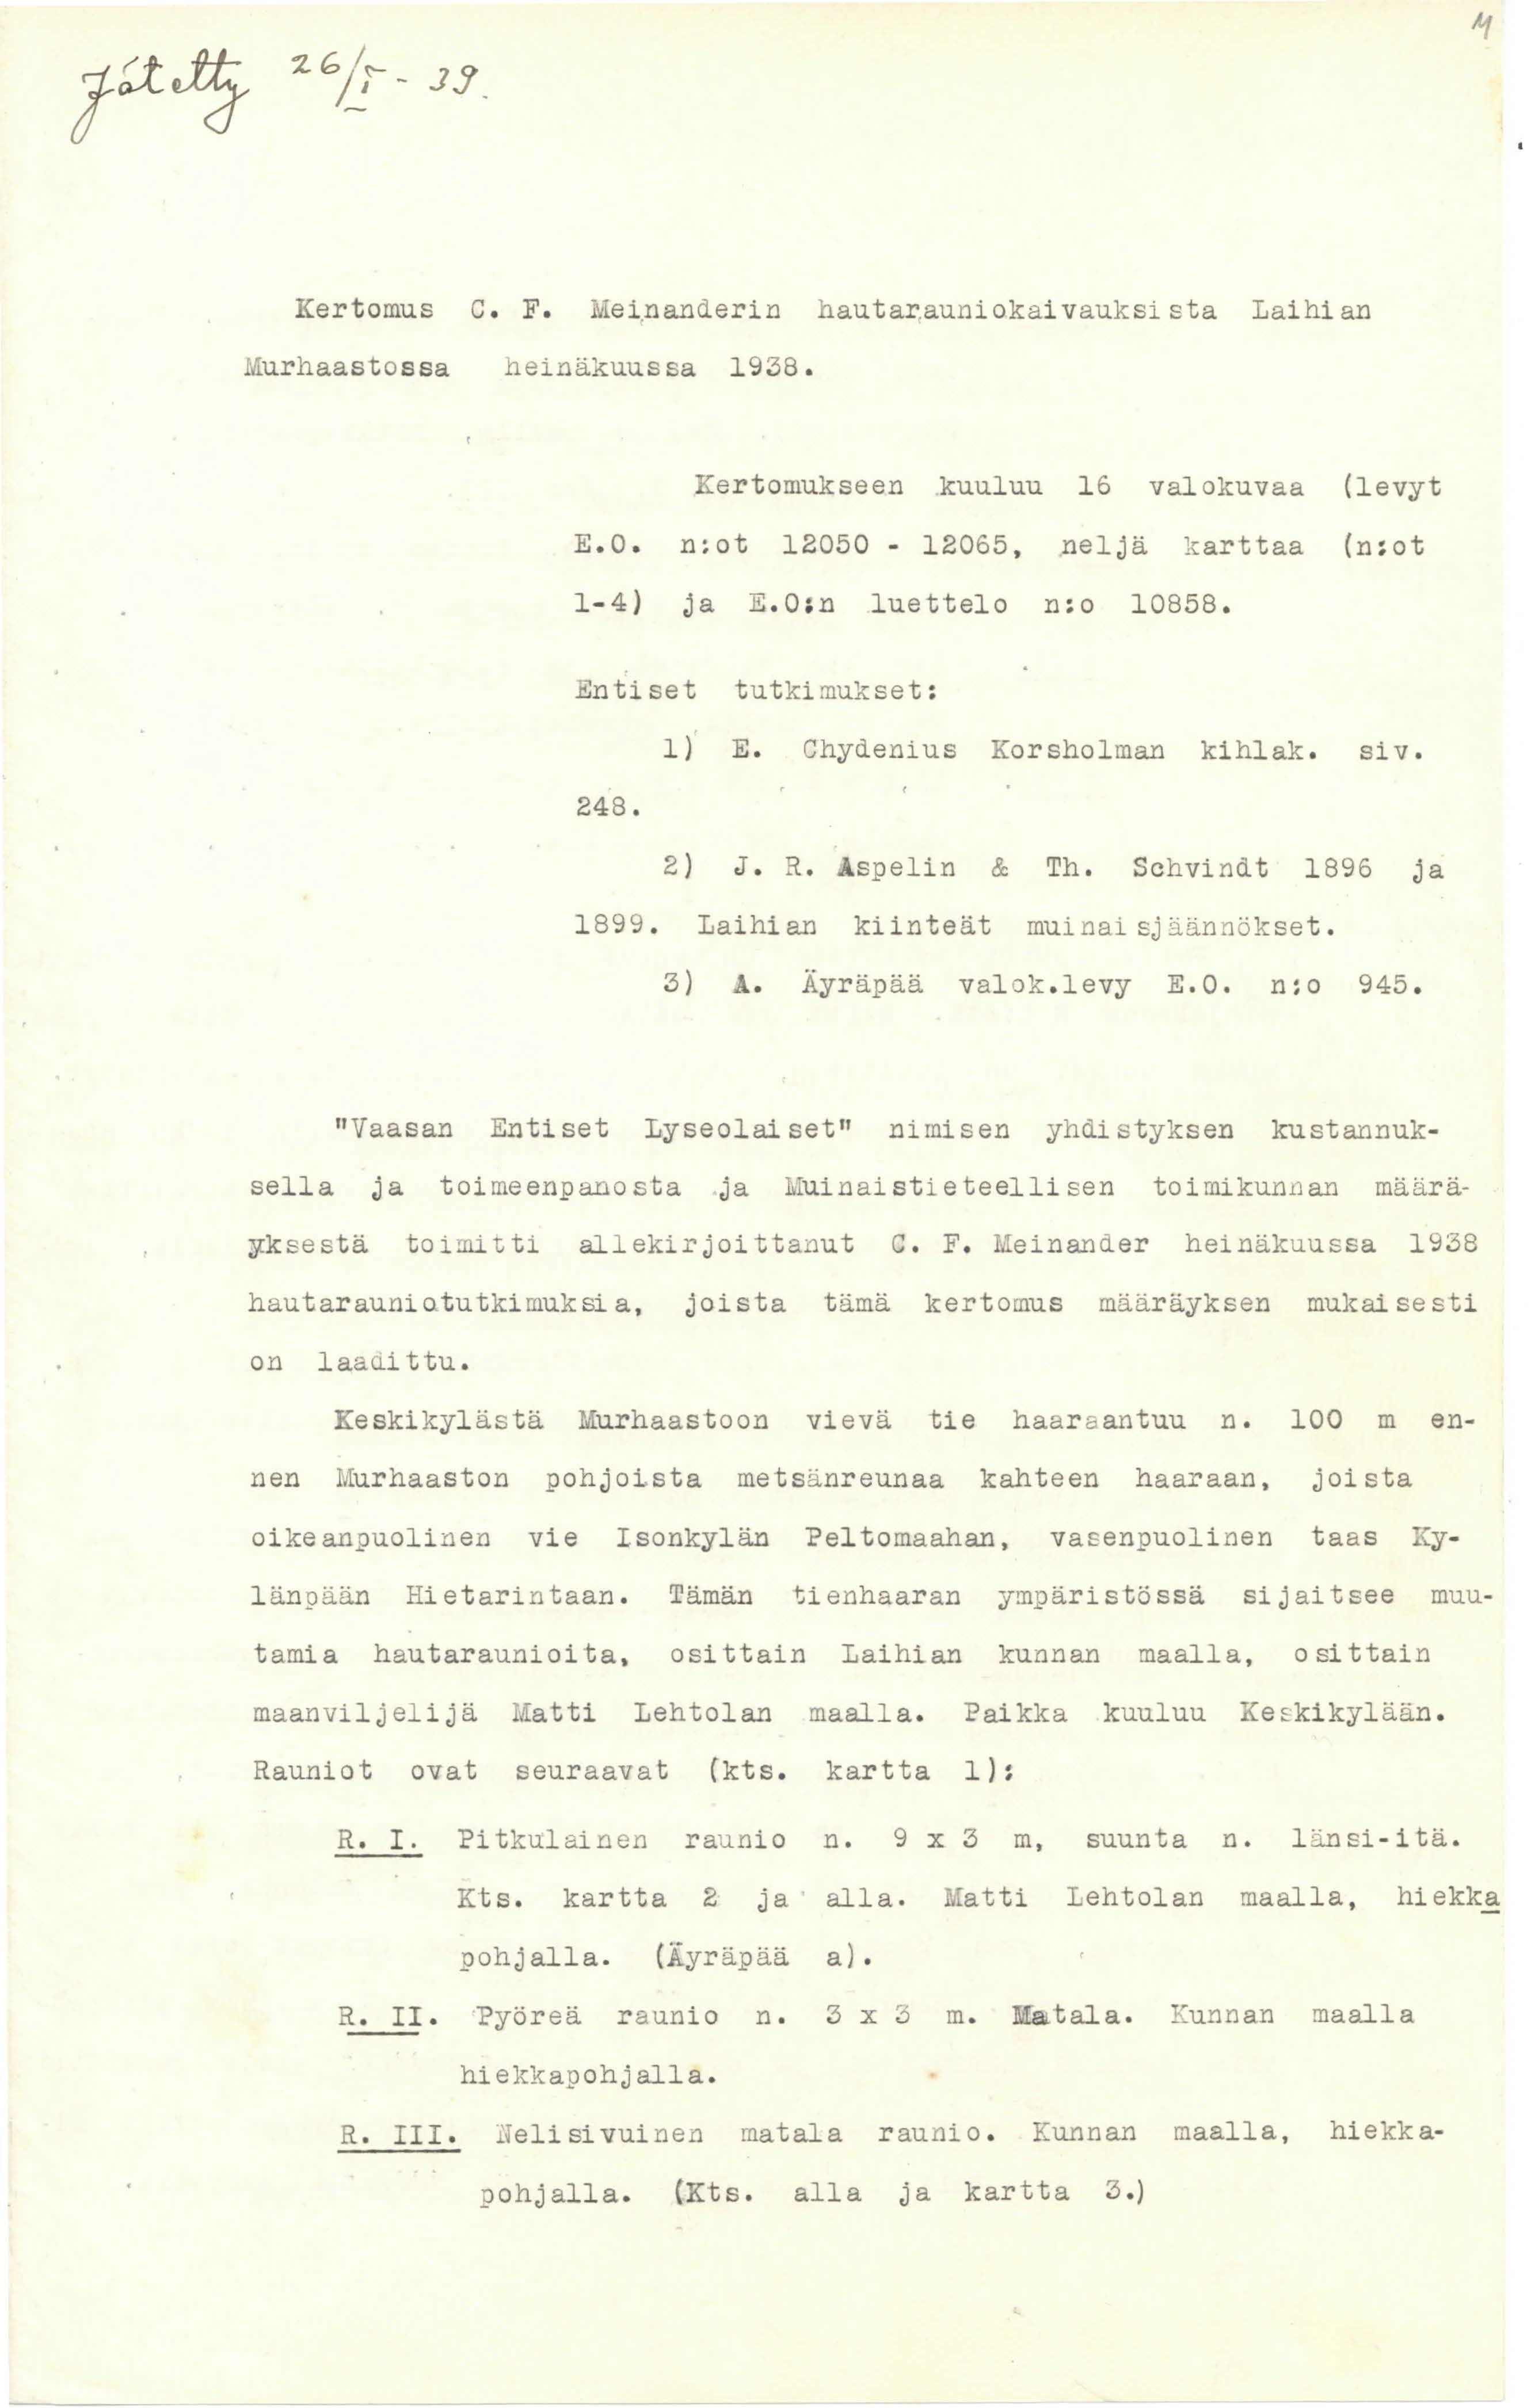 Kertomus c. F. Mei.nanderin hautar,auniokaivauksi sta Laihian urhaastossa heinäkuussa 1938. Kertomukseen kuuluu 16 valokuvaa (levyt E.O. n:ot 12050-12065, neljä karttaa (n:ot 1-4) ja E.